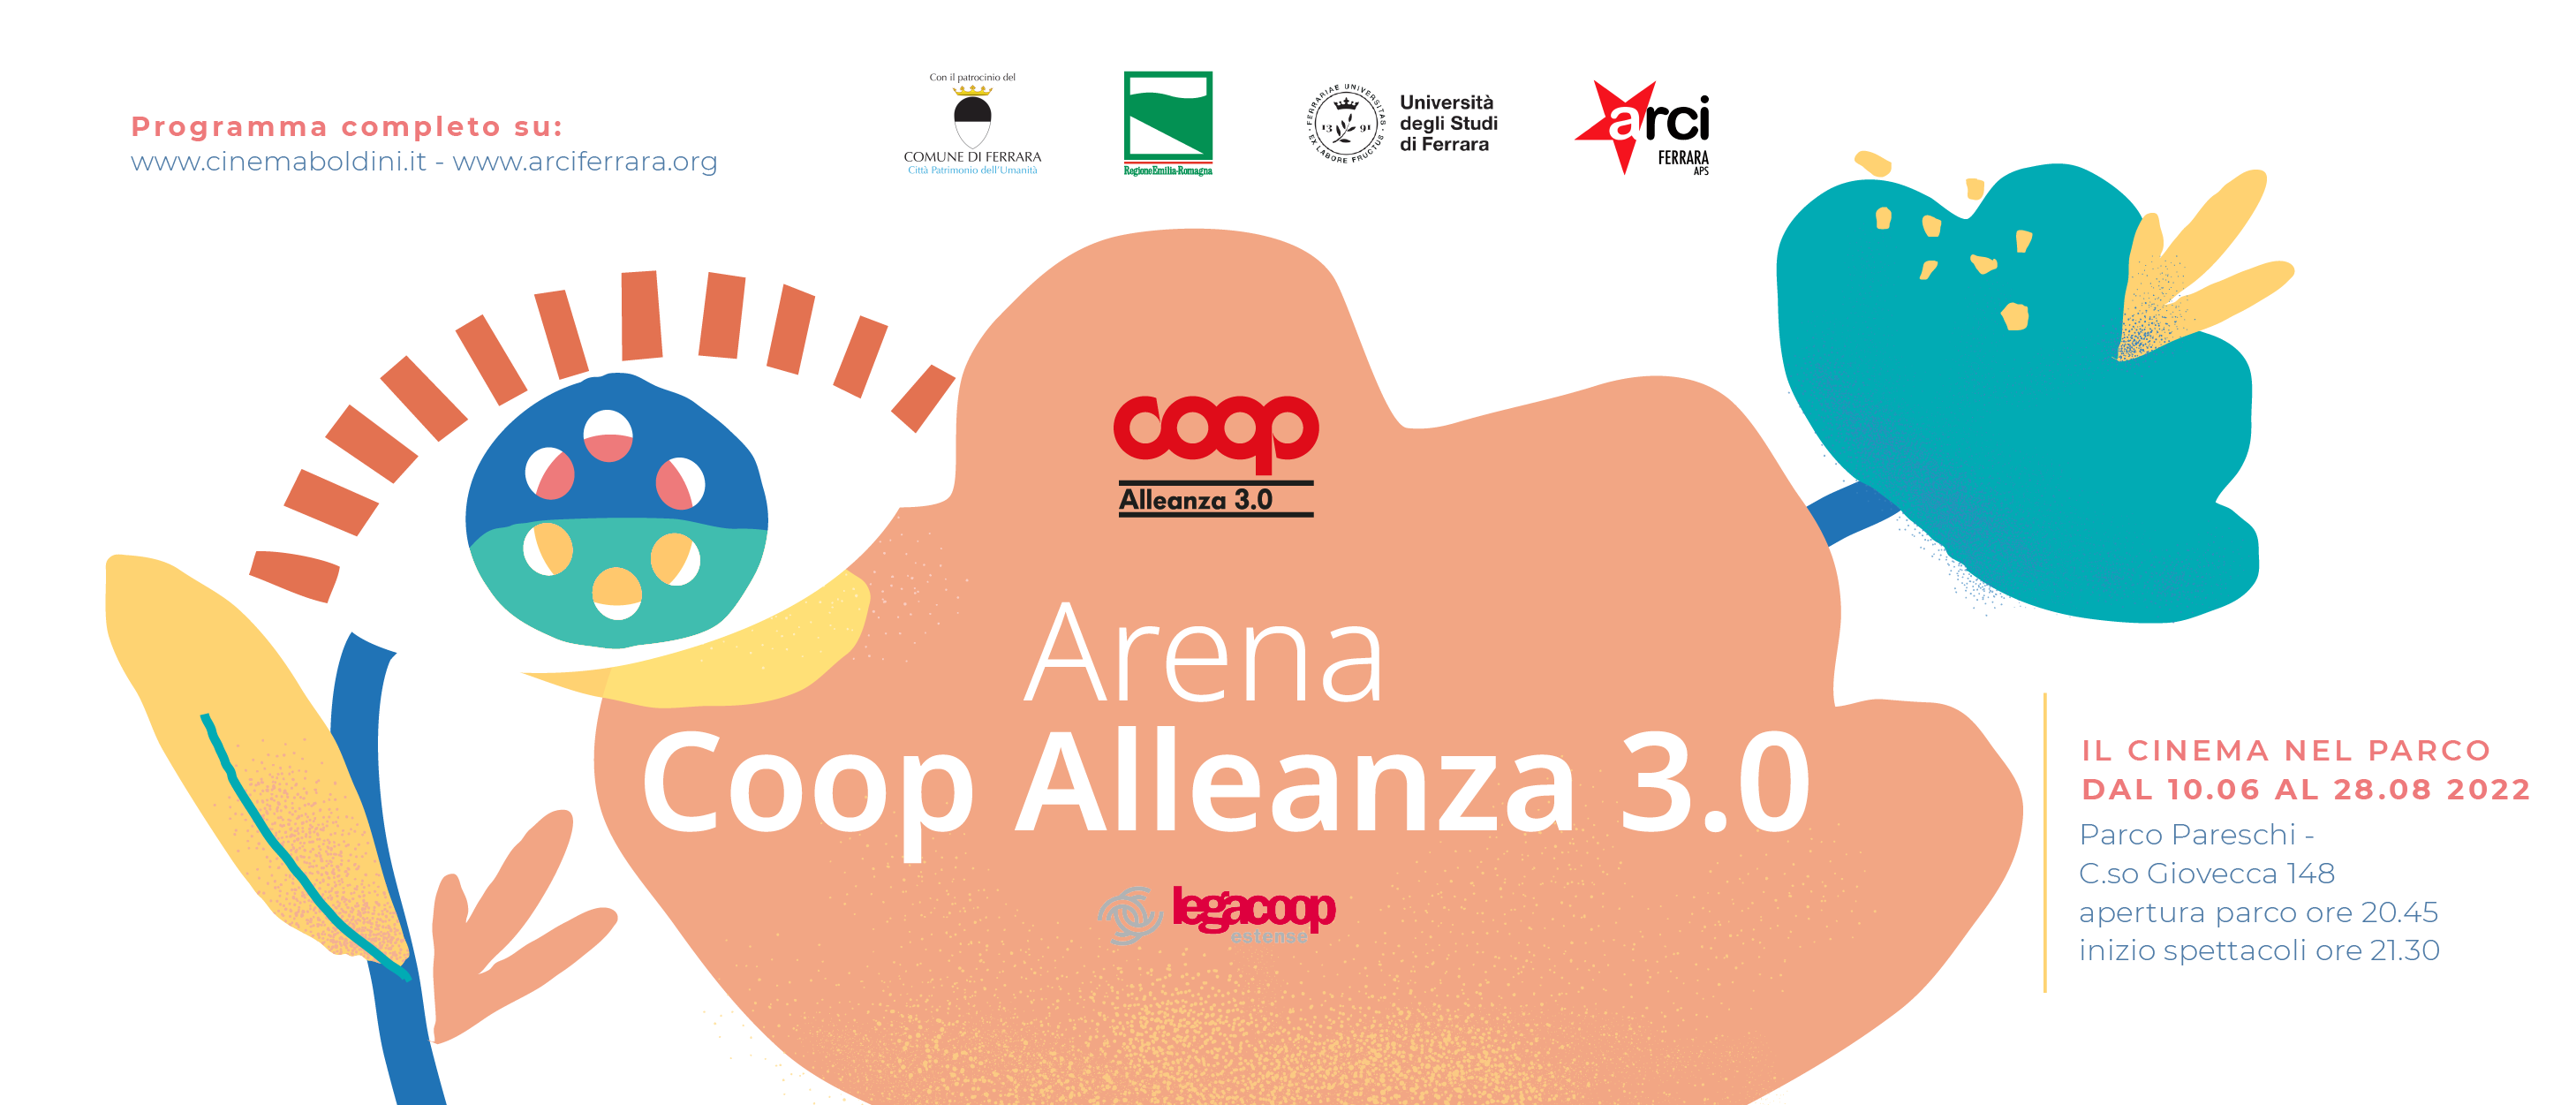 Arena Coop Alleanza 3.0: scopri la programmazione dal 25 luglio al 28 agosto